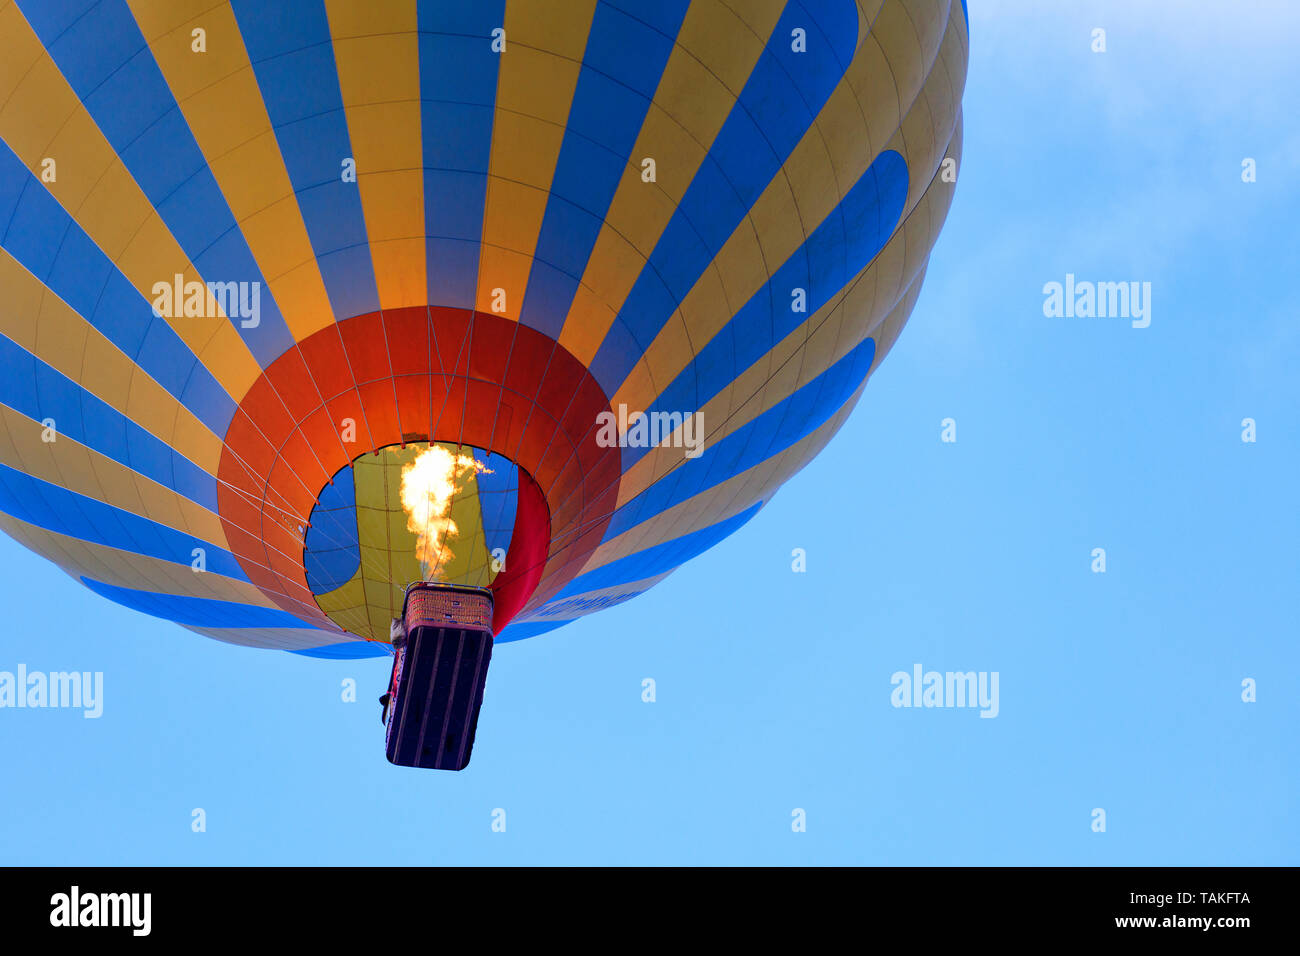 La flamme de feu réchauffe l'air dans un beau motley jaune-bleu ballon et soulève un panier de touristes dans le ciel bleu, vue de dessous. Banque D'Images